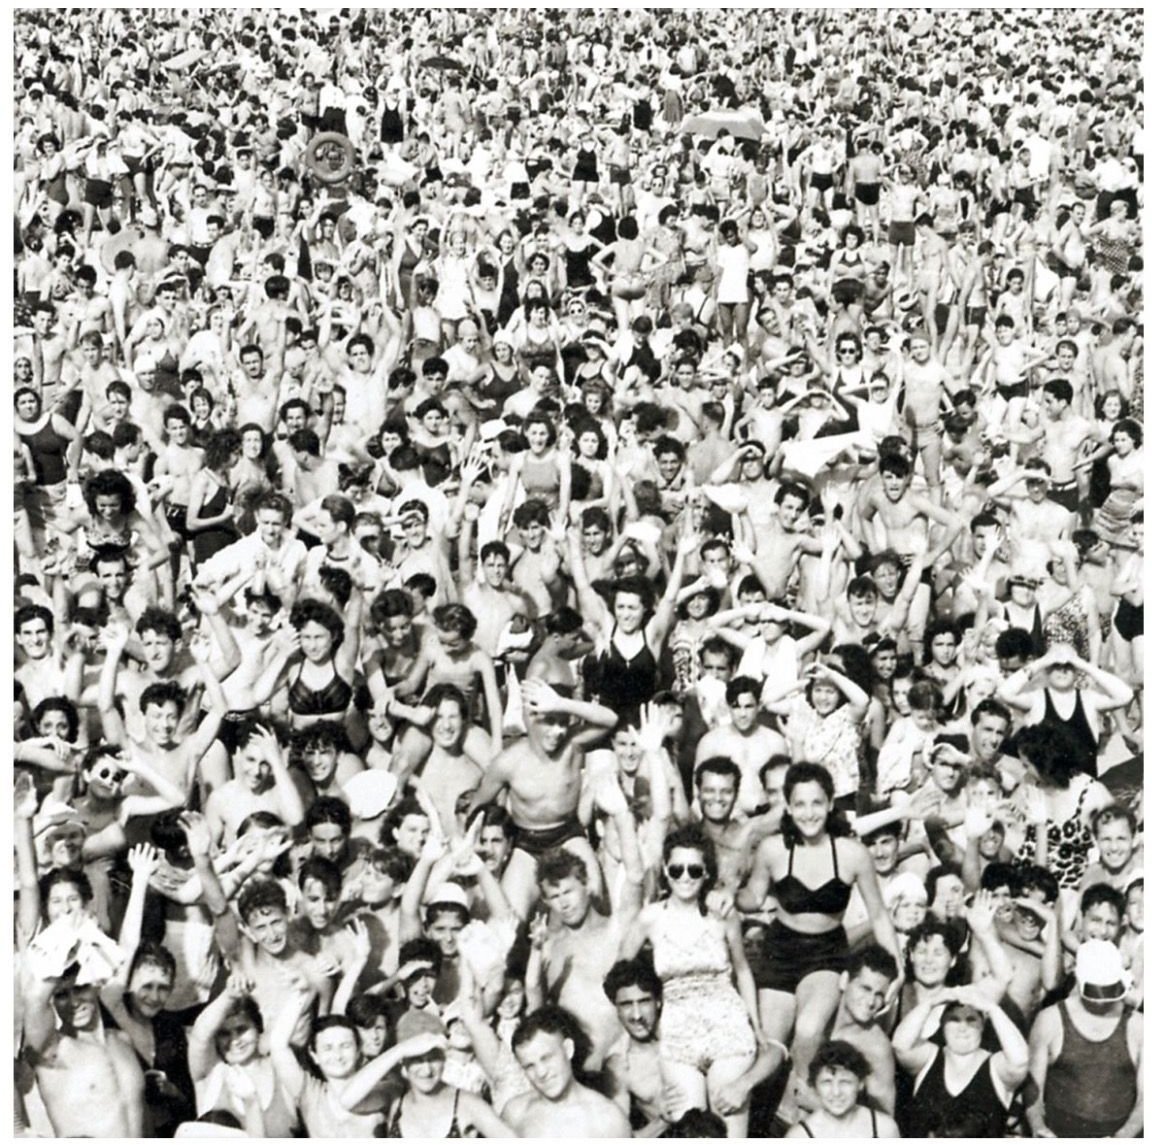 LP George Michael - Listen Without Prejudice (Reissue) (LP)